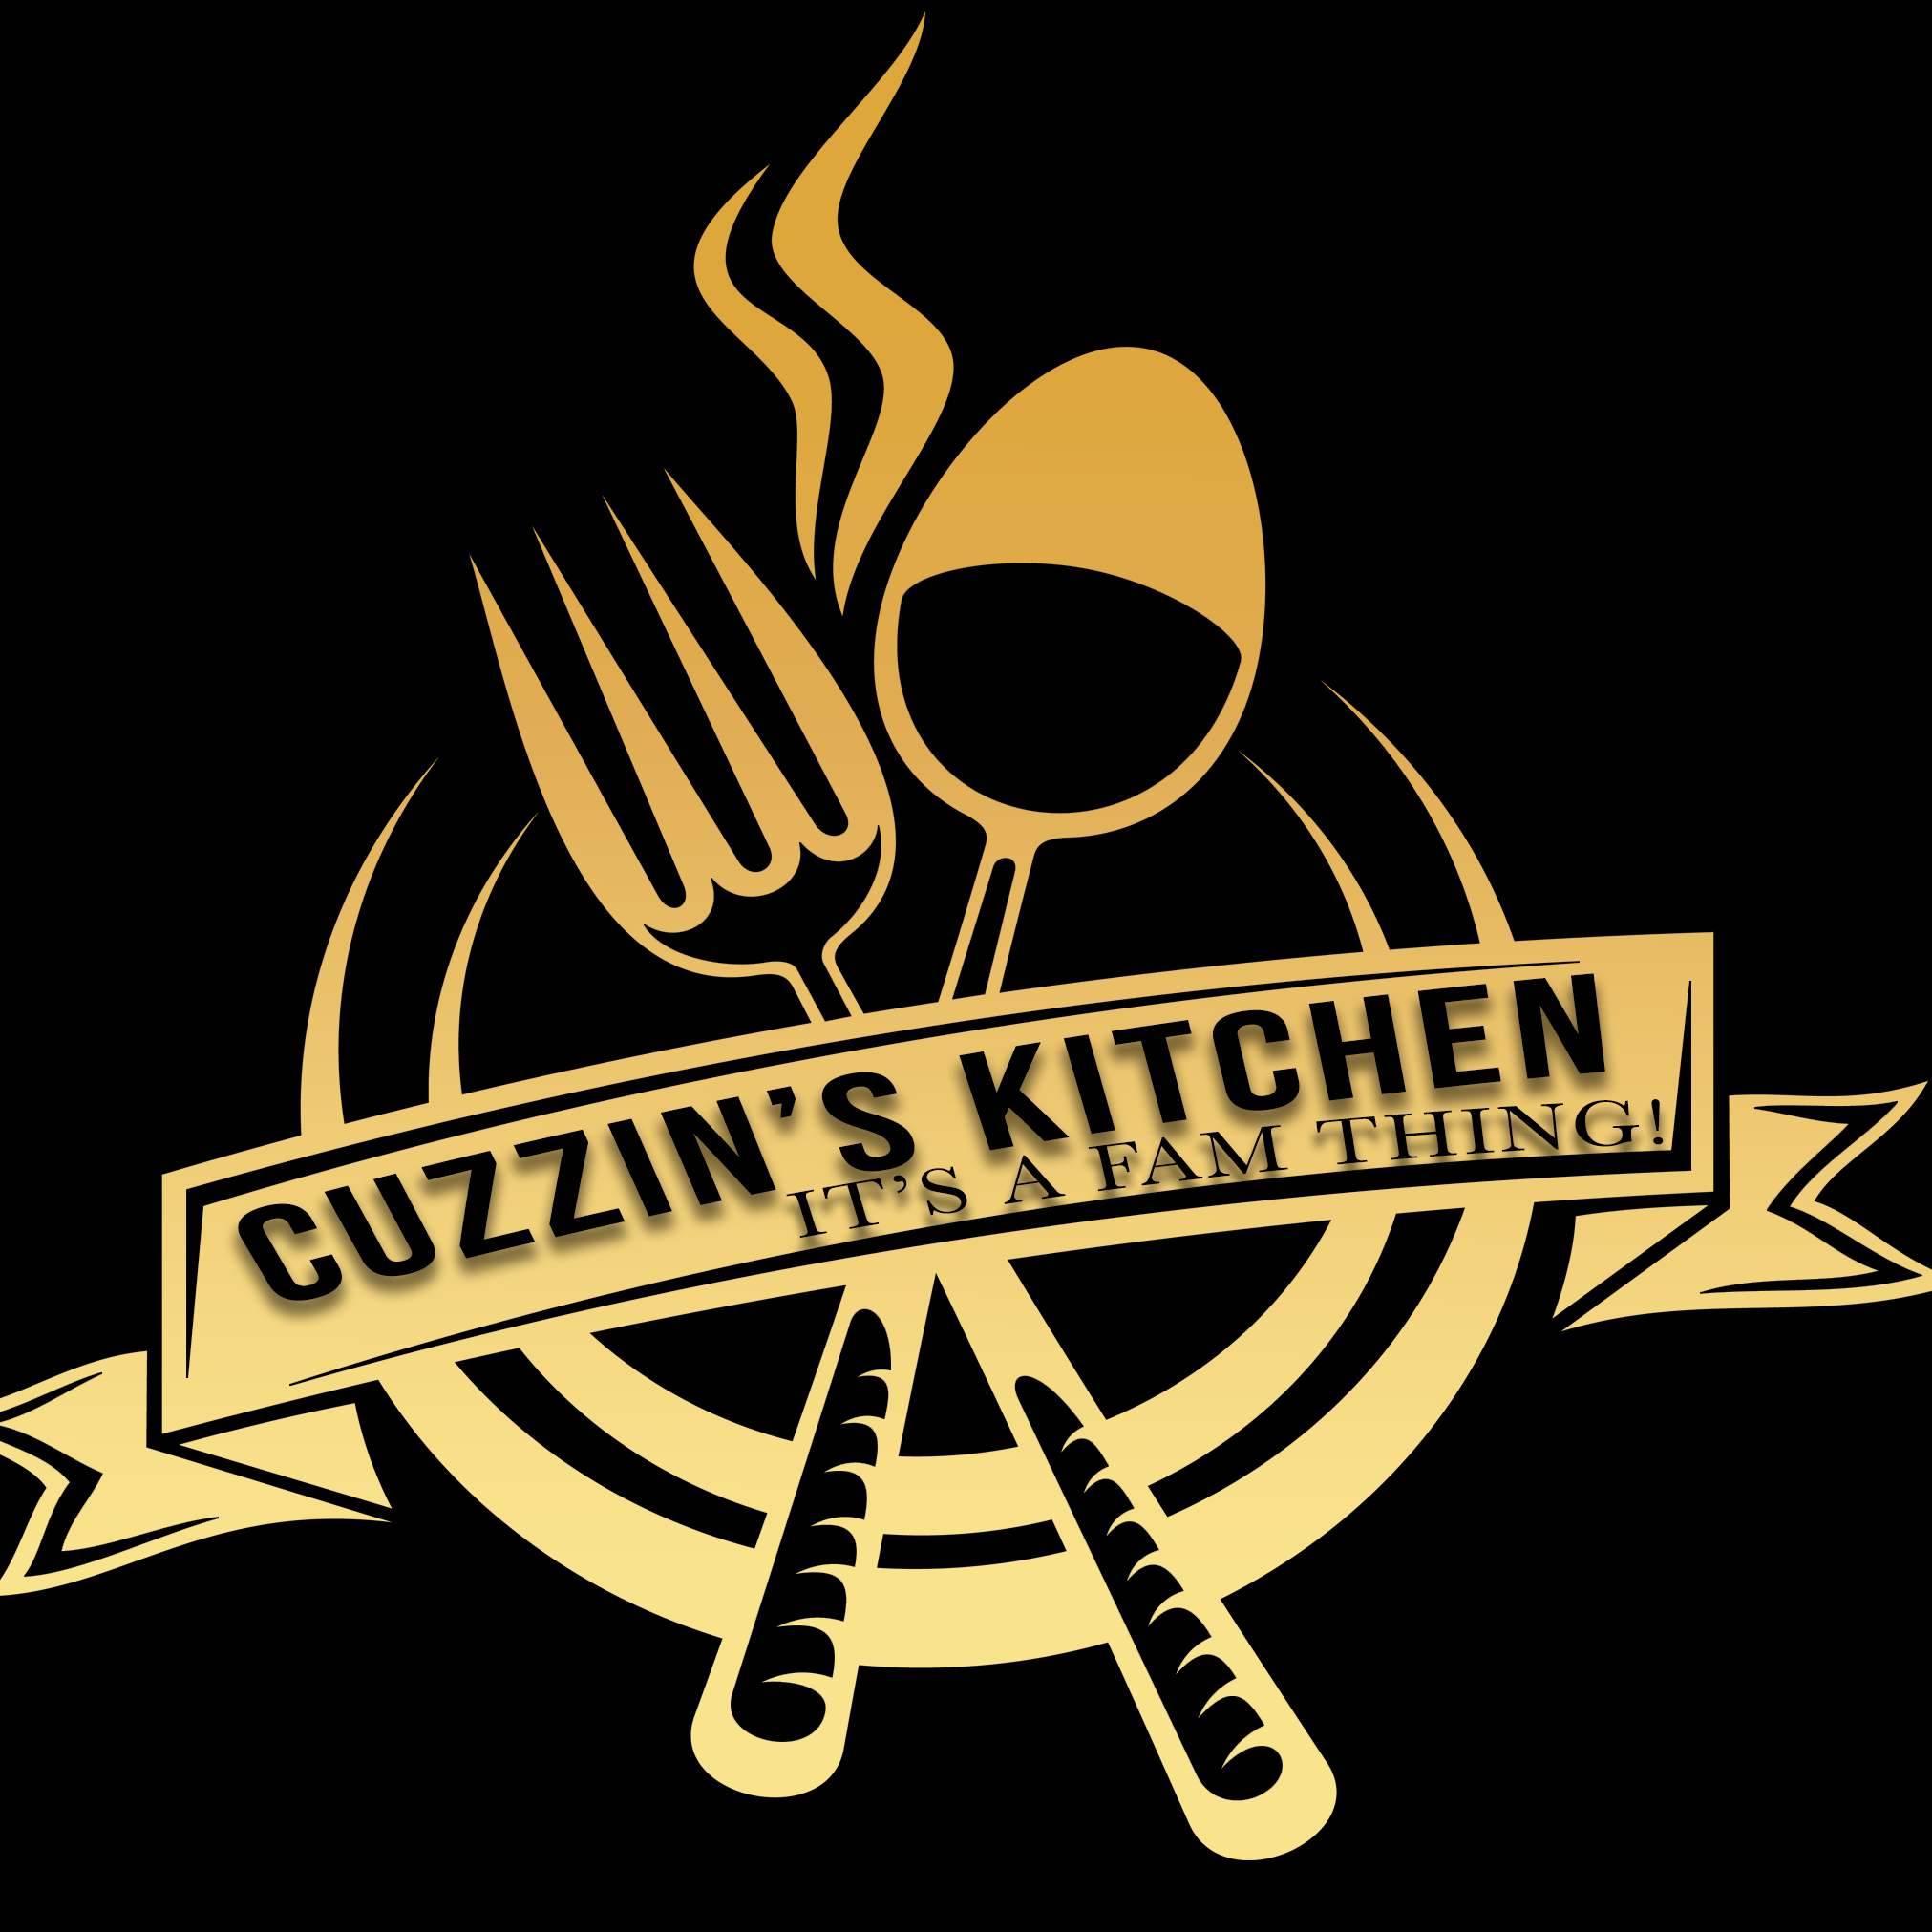 Cuzzin's Kitchen